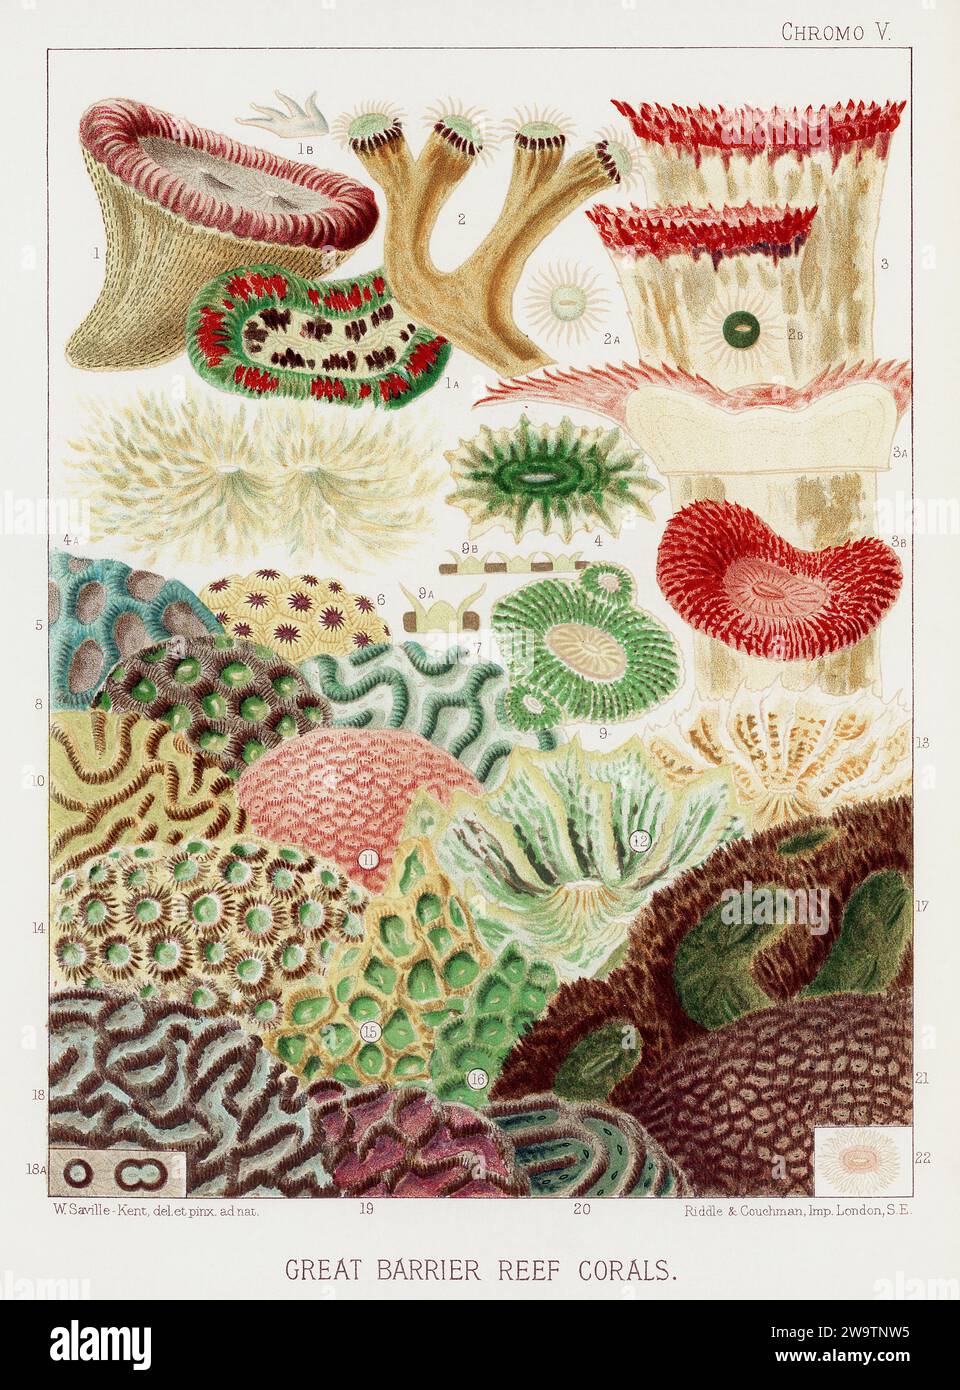 Das Great Barrier Reef von Australien. Ein farbenfroher Teller eines antiken Buches über Korallen und Korallenriffe. Stockfoto